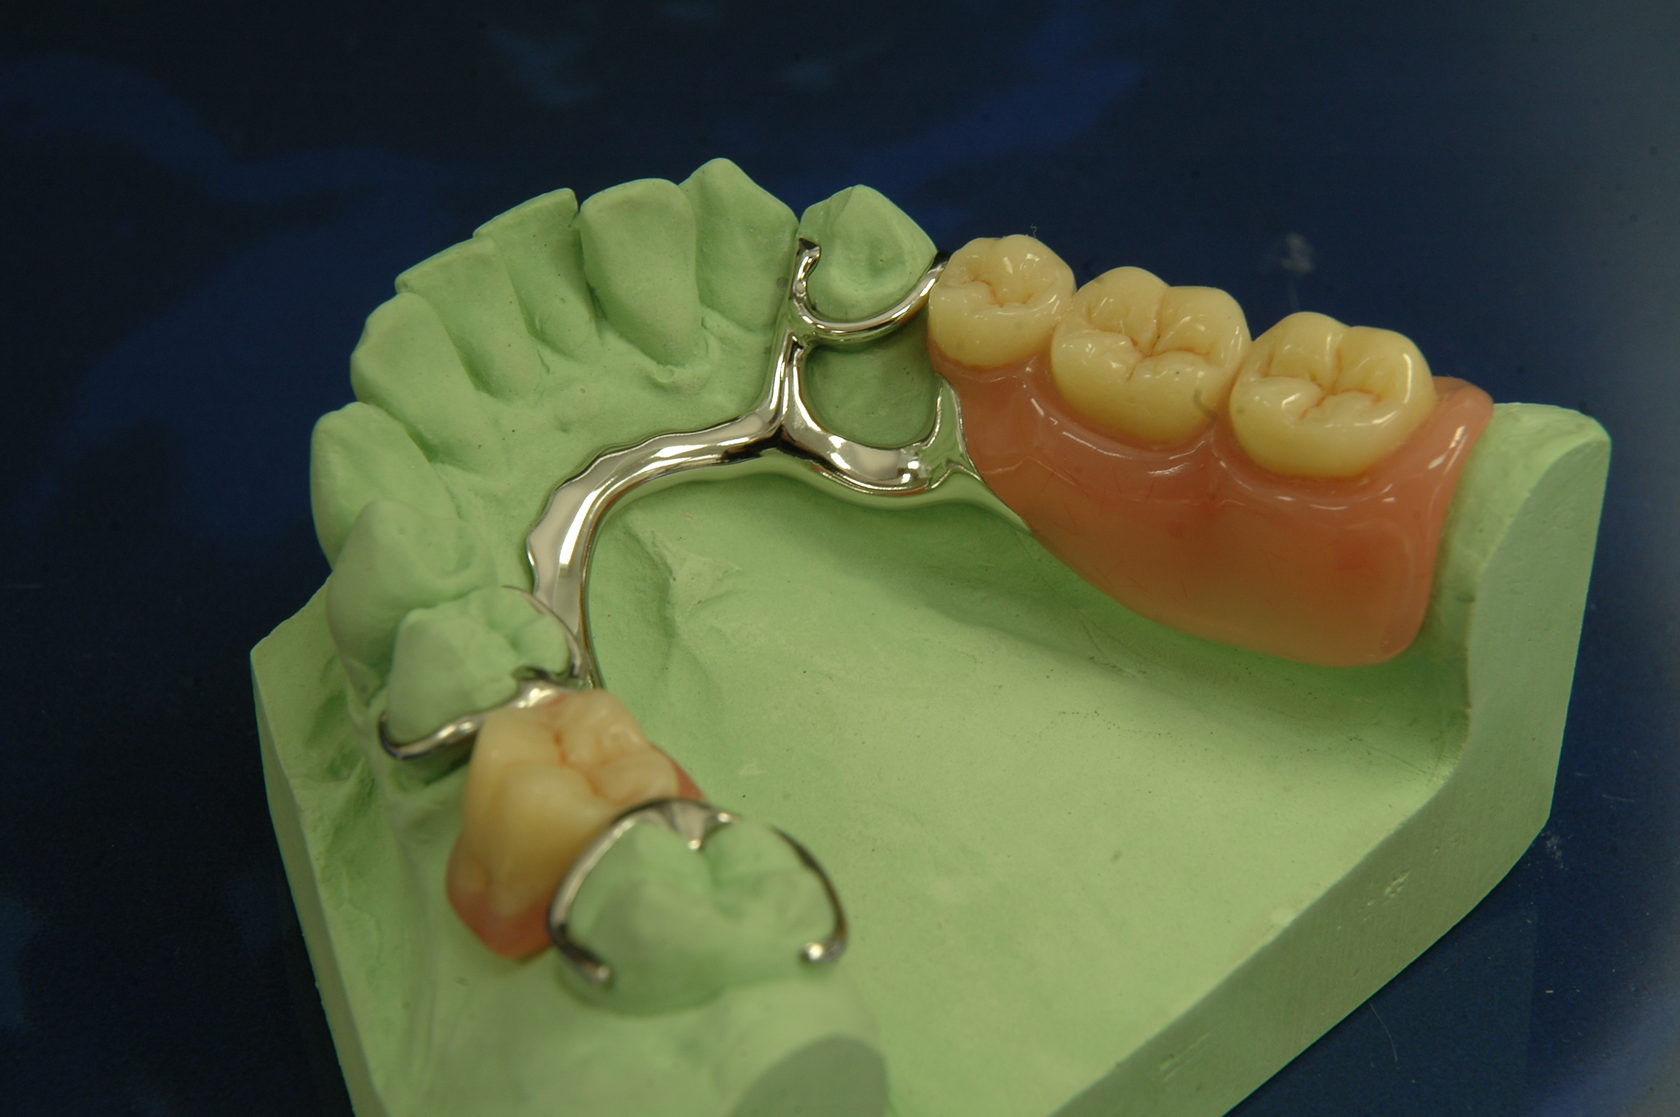 Поставить бюгельный протез. Бюгельный протез кламмерный (remanium-700). Мост зубной бюгельный протез. Бюгельный протез (2-3 кламмера). Бюгельный микропротез на 1 зуб.